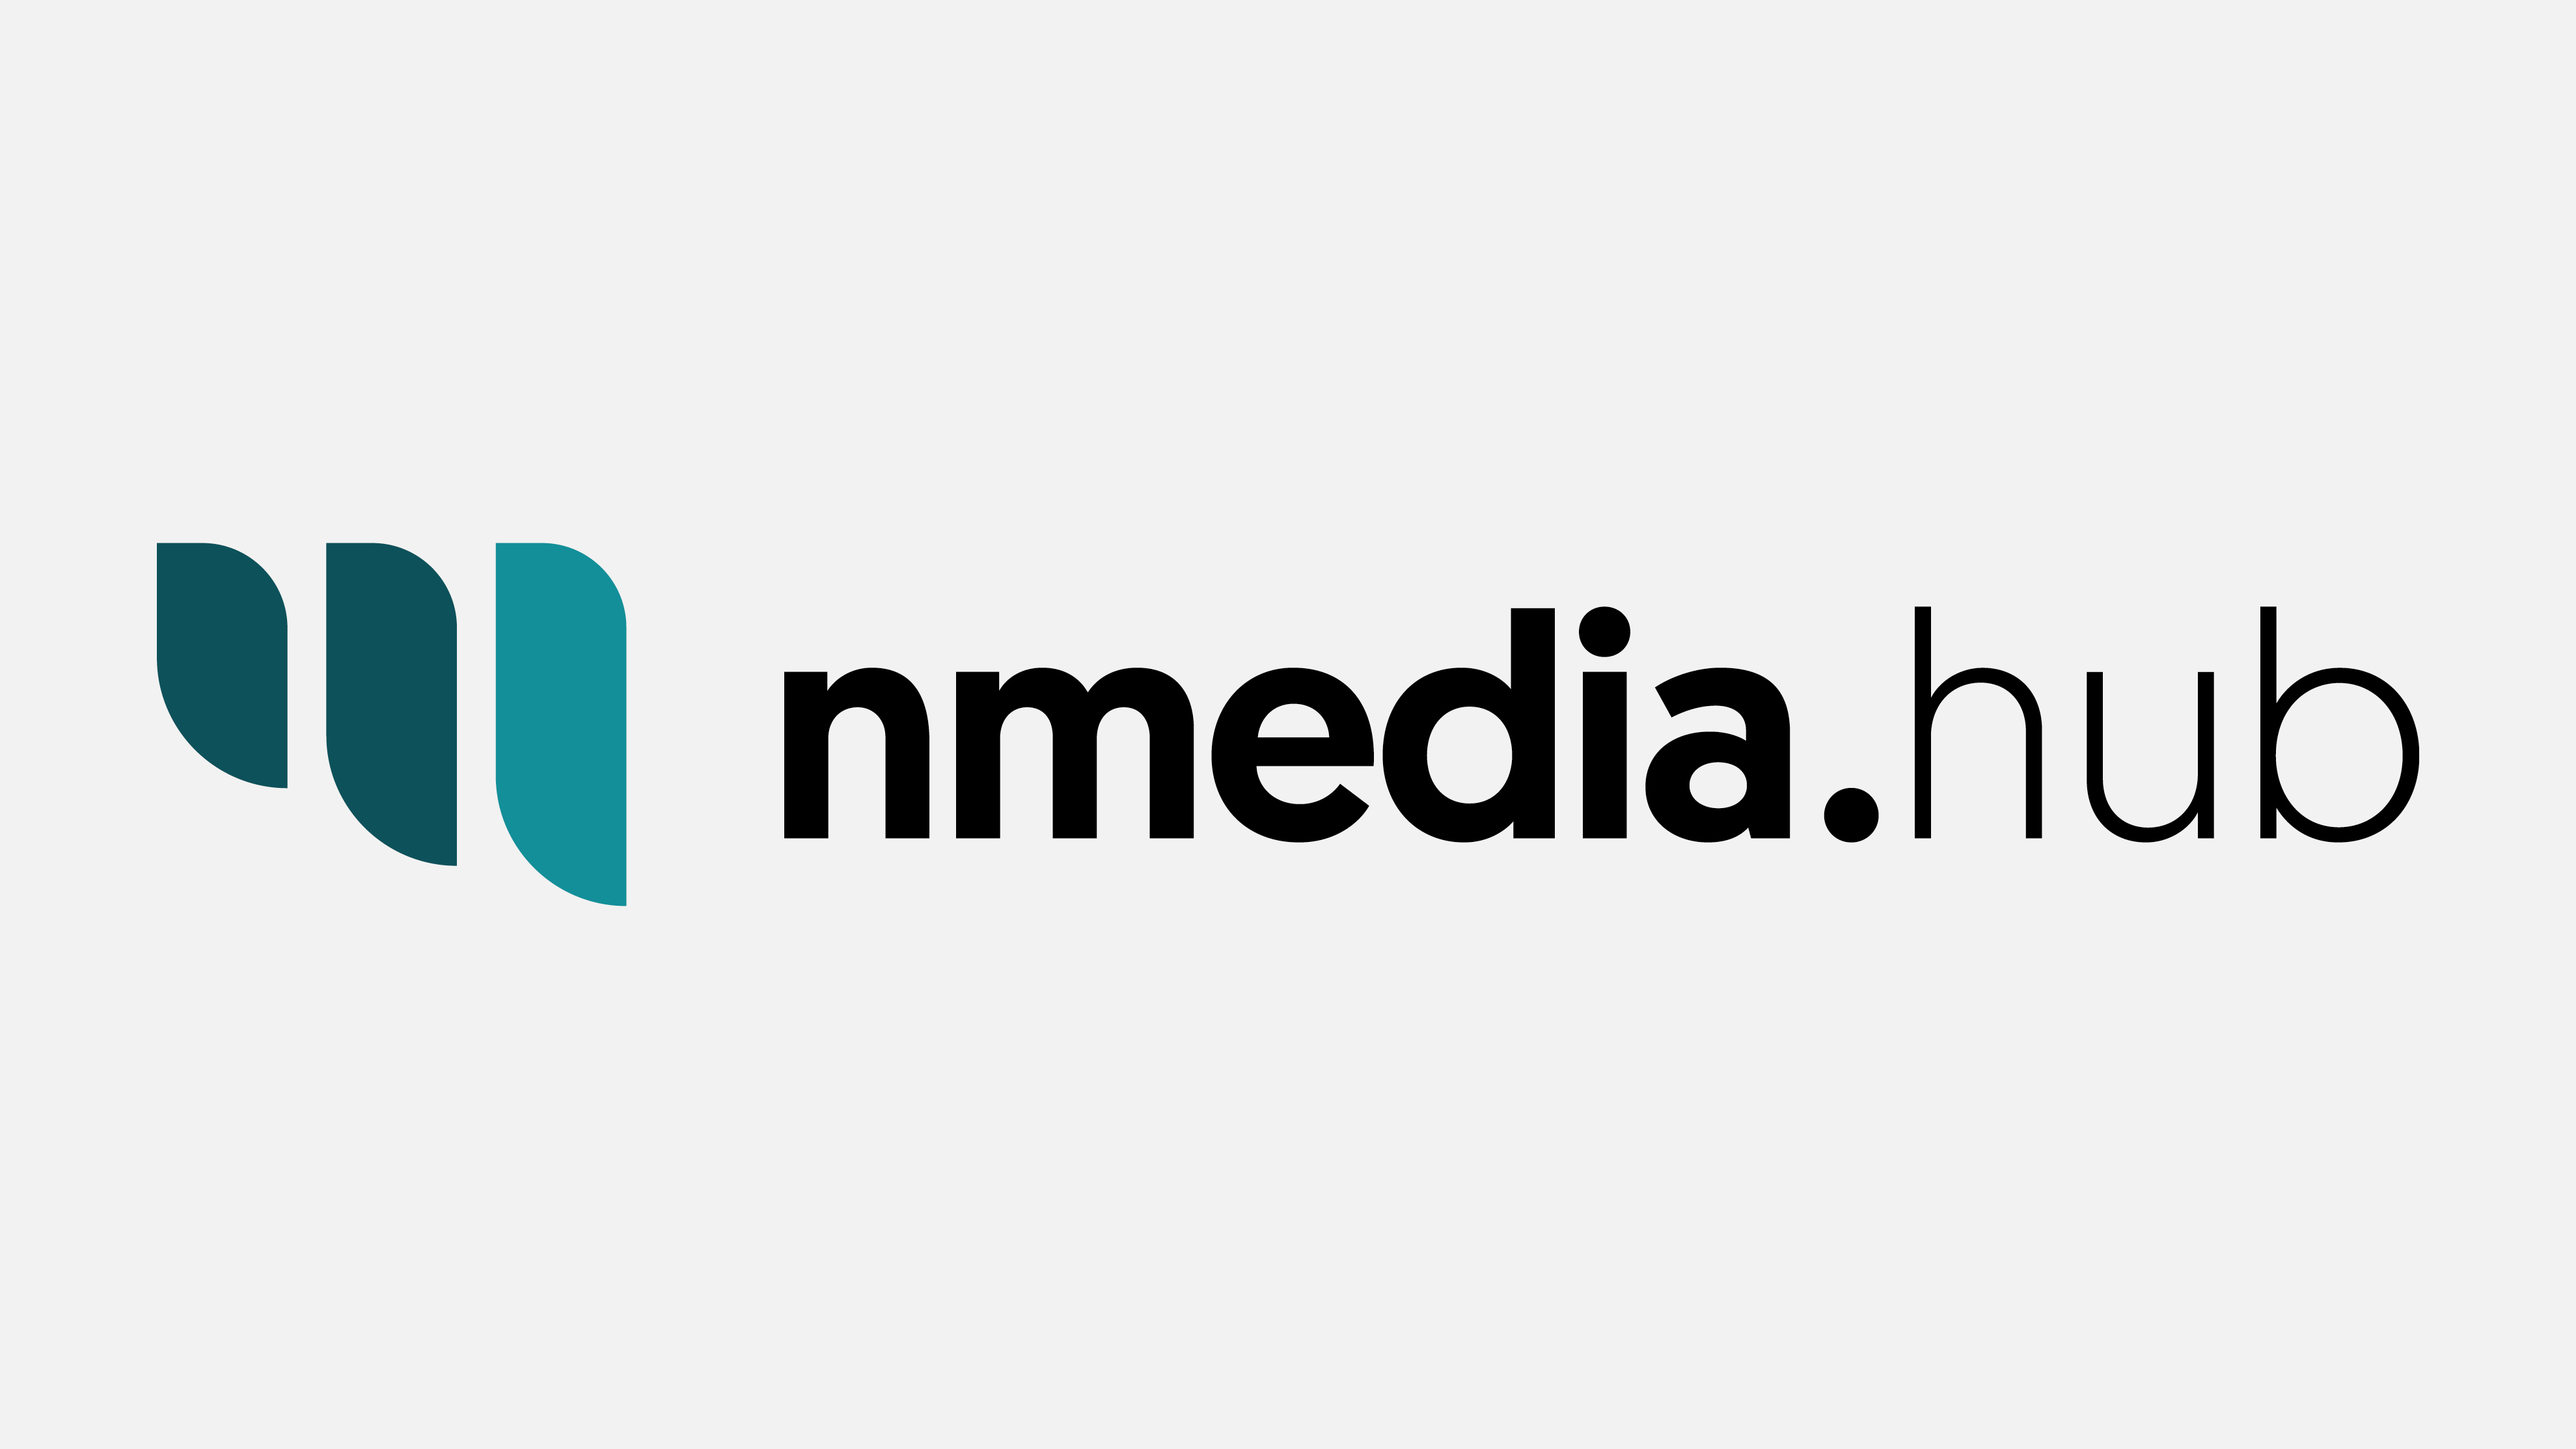 nmedia.hub logo